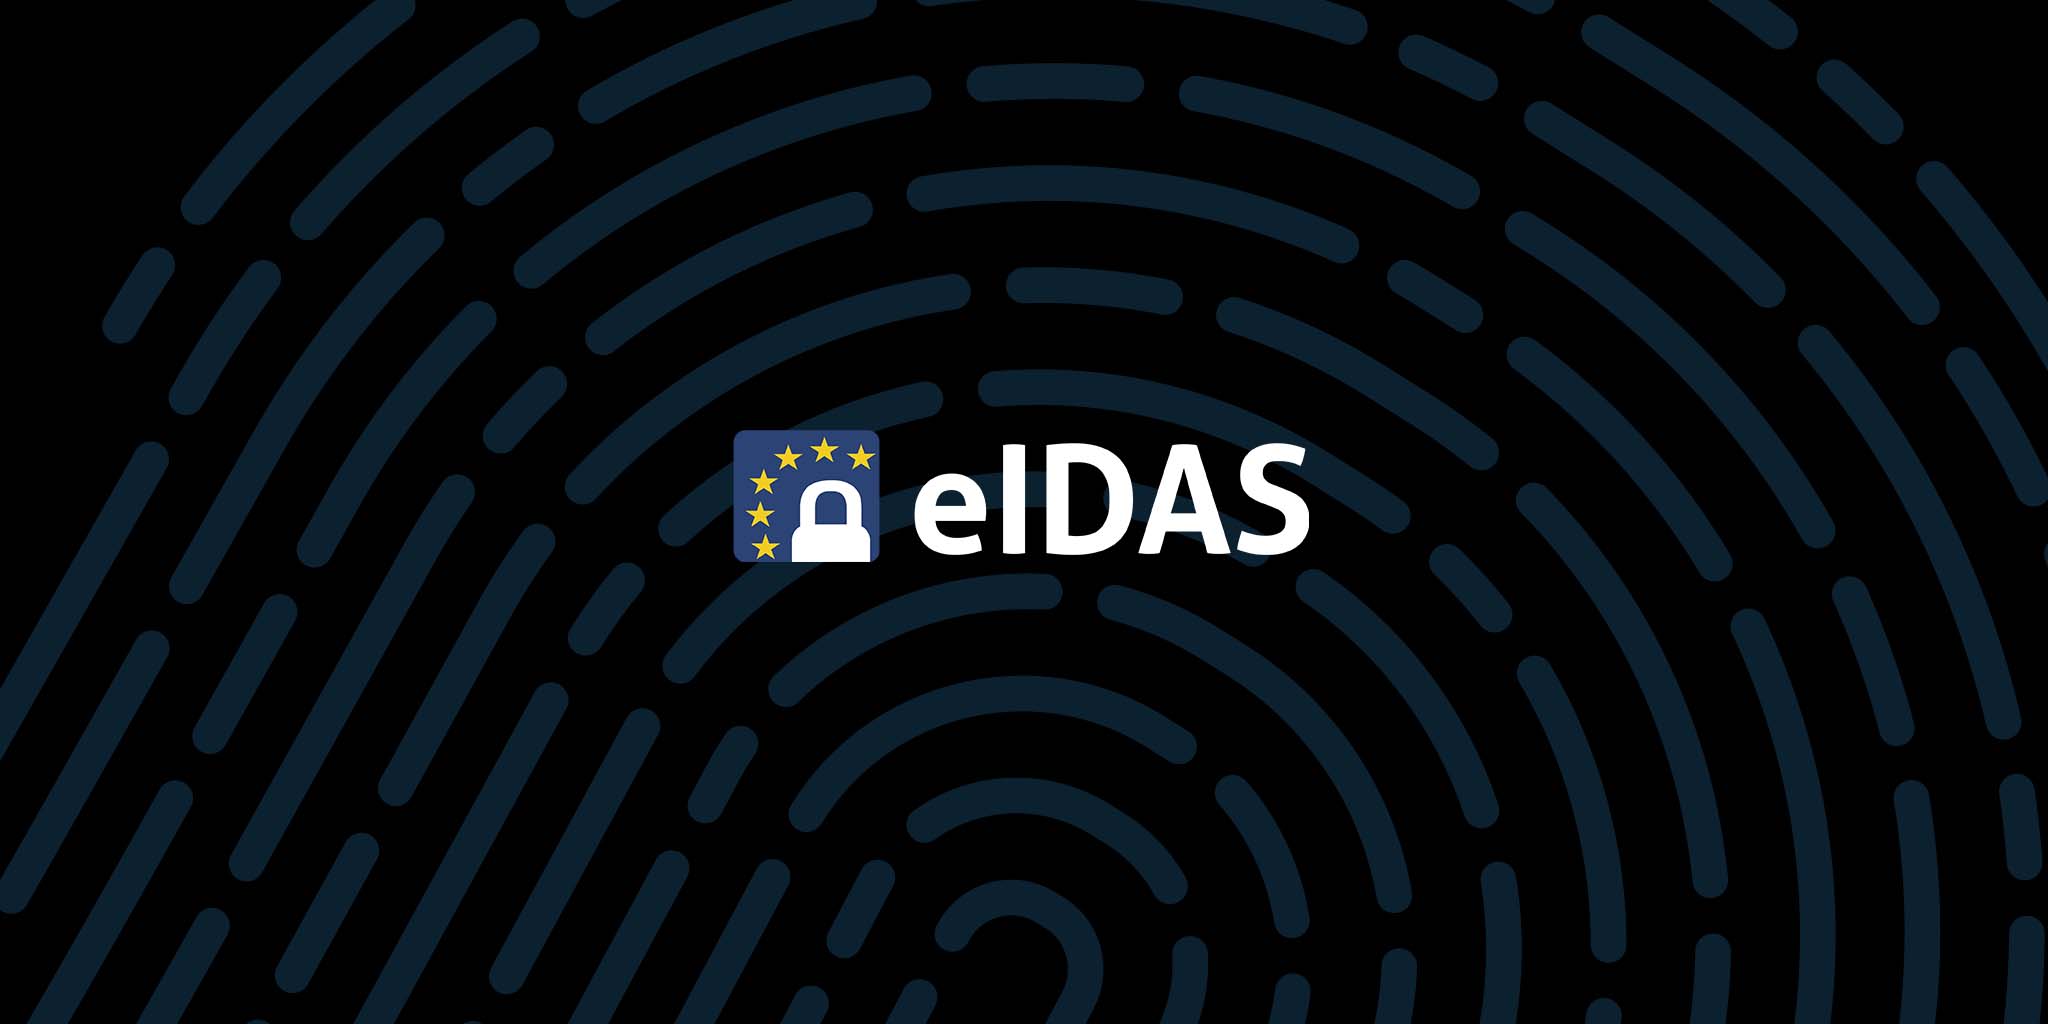 eIDAS-logotypen mot en mönstrad svart bakgrund